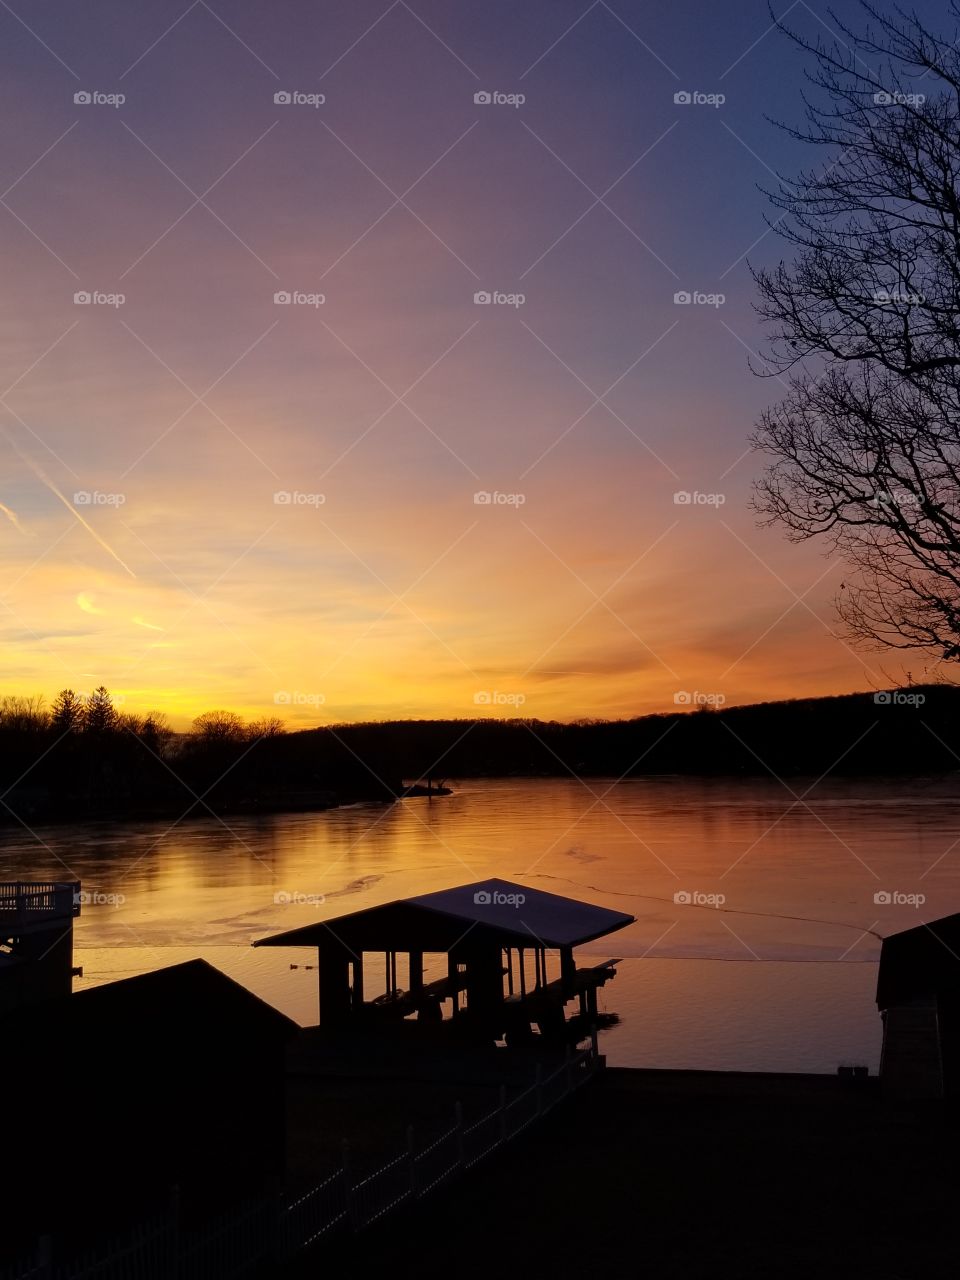 Beautiful sunset on a peaceful lake.